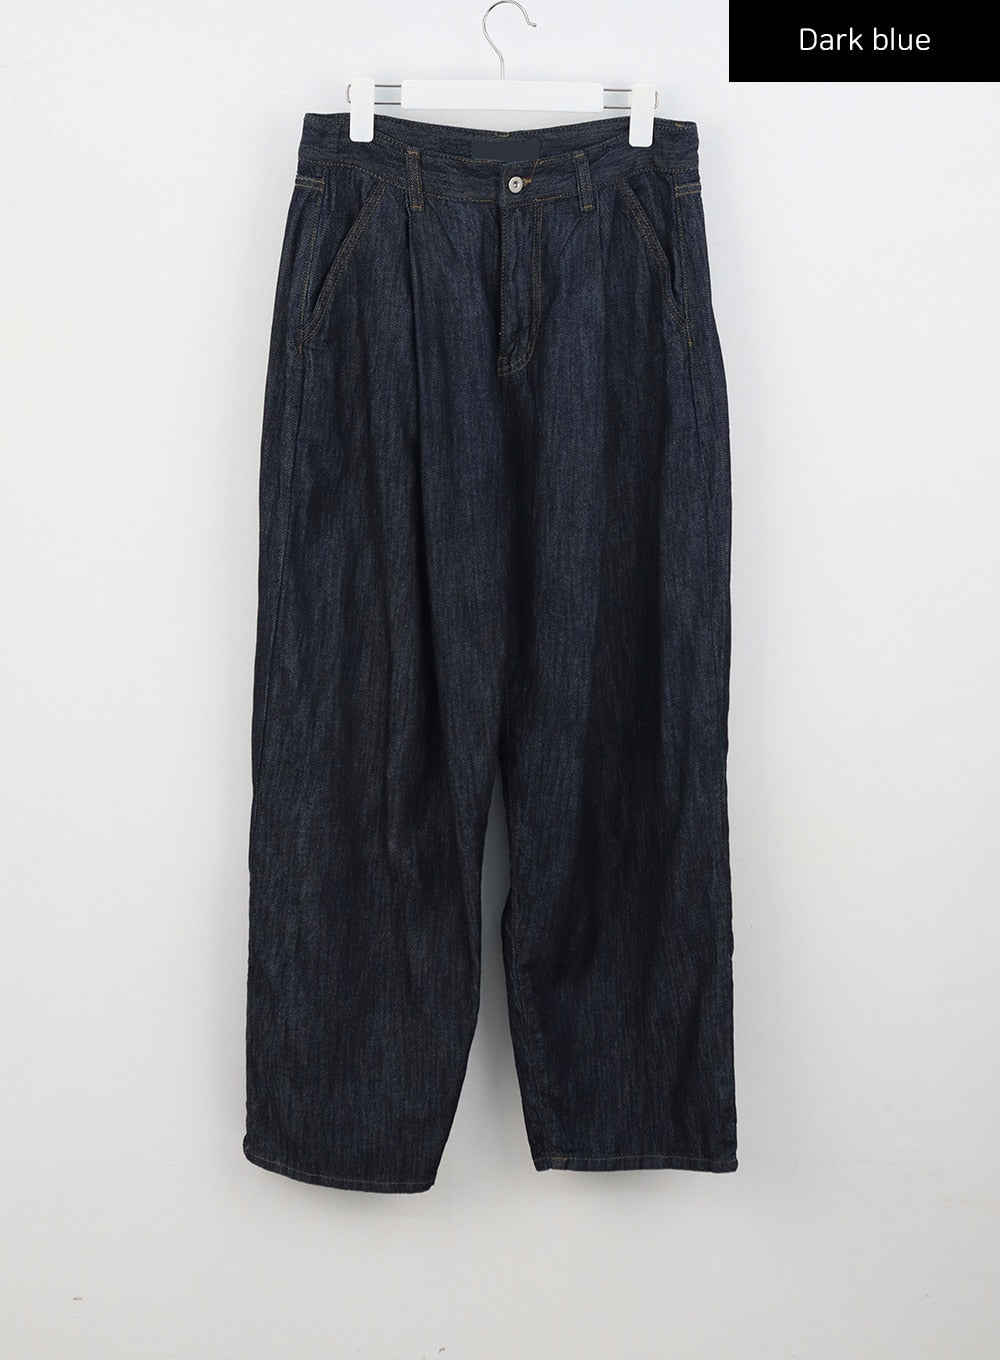 baggy-jeans-unisex-cu314